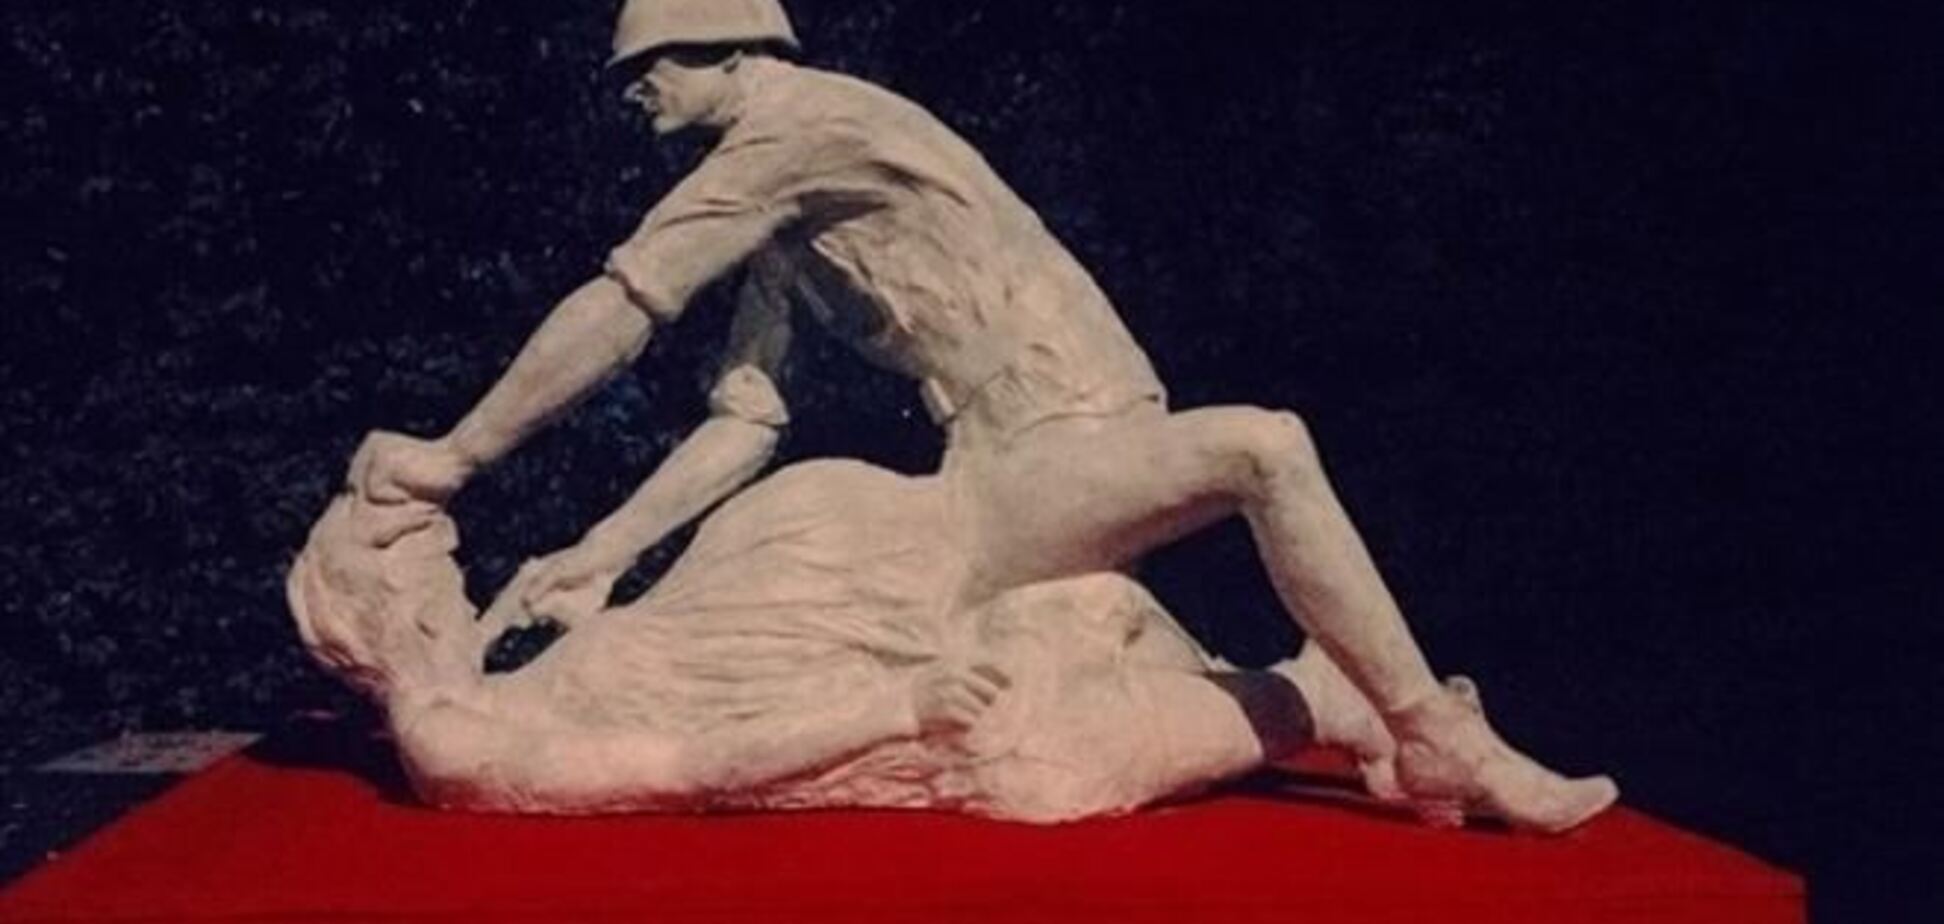 В Гданьске скульптура советского солдата-насильника простояла одну ночь